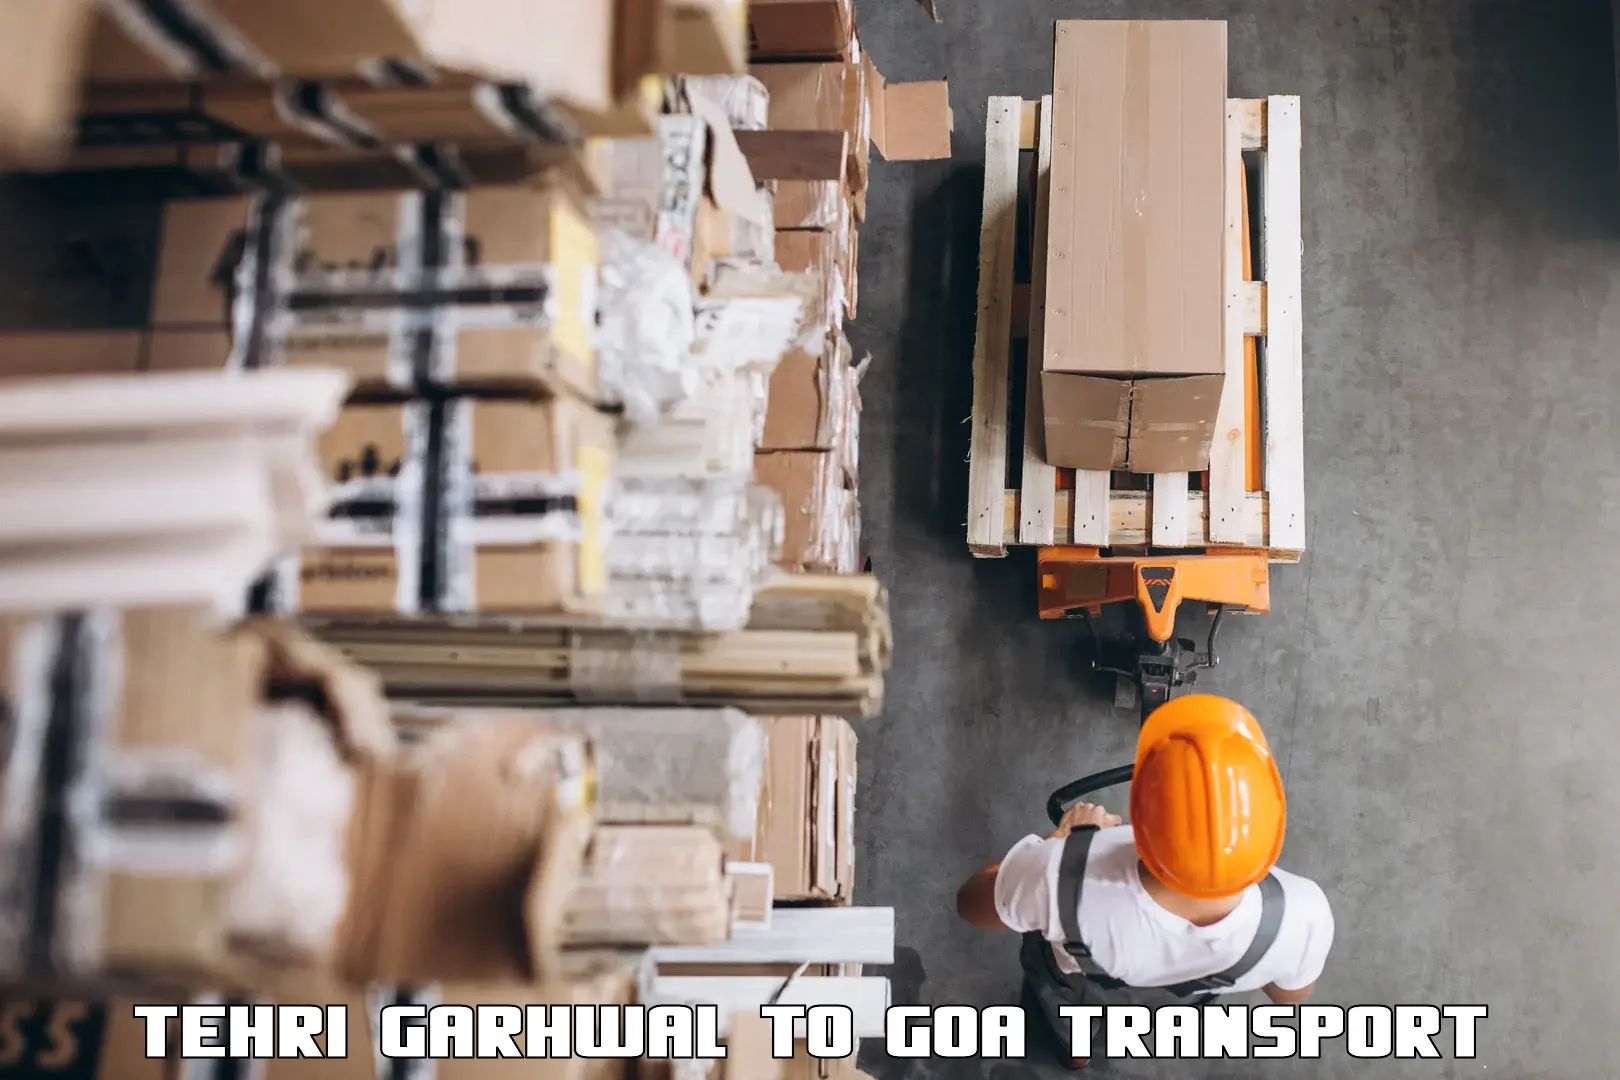 Lorry transport service Tehri Garhwal to Bicholim